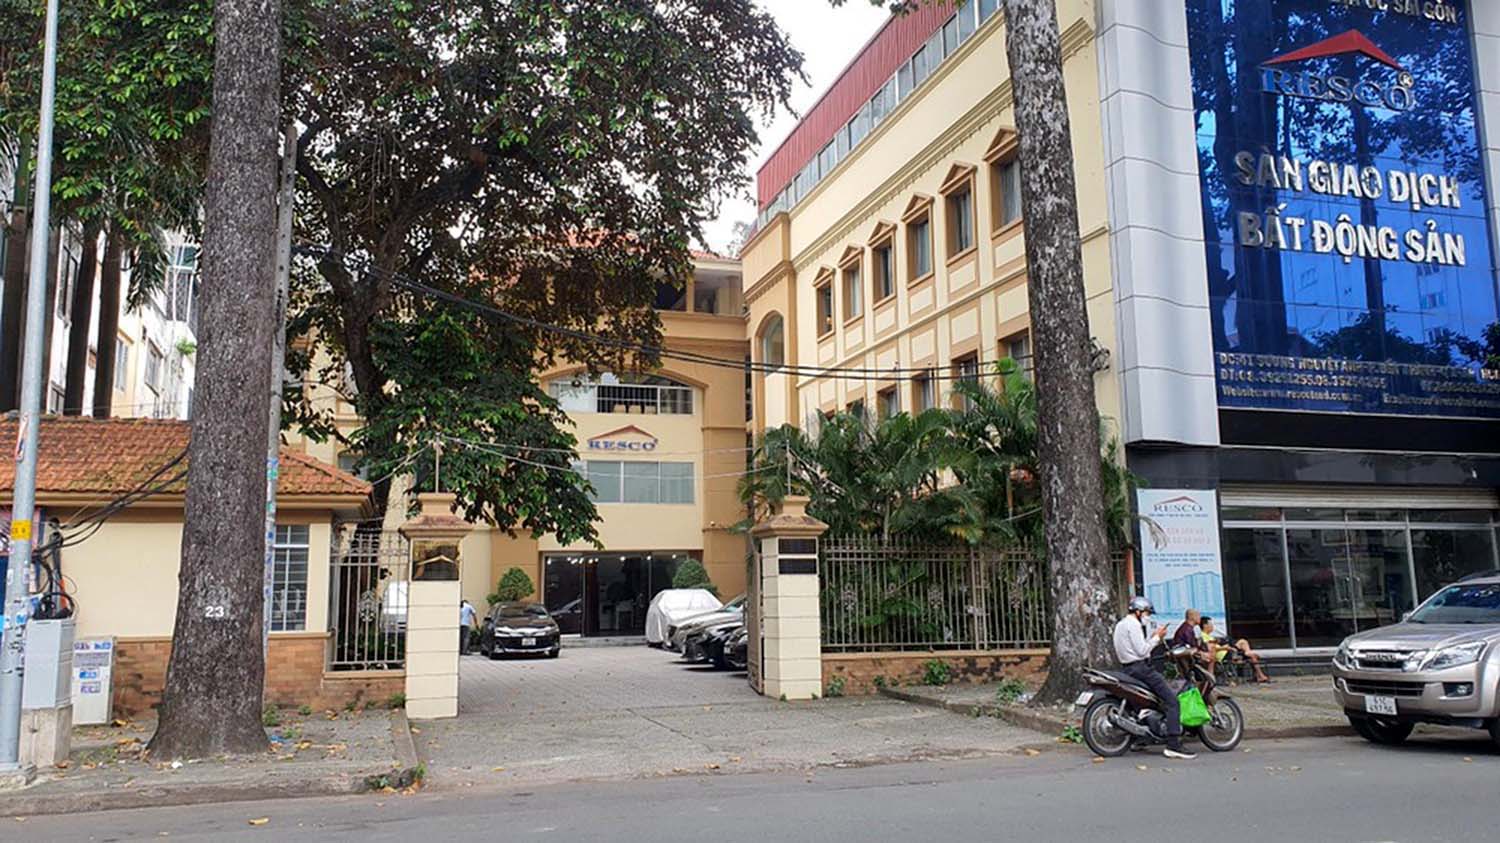 Trụ sở Công ty Địa ốc Sài Gòn - TNHH MTV, nơi có hàng loạt sai phạm và cơ quan công an đã khởi tố, bắt nguyên Chủ tịch HĐTV và nguyên Tổng giám đốc  hồi tháng 11/2022